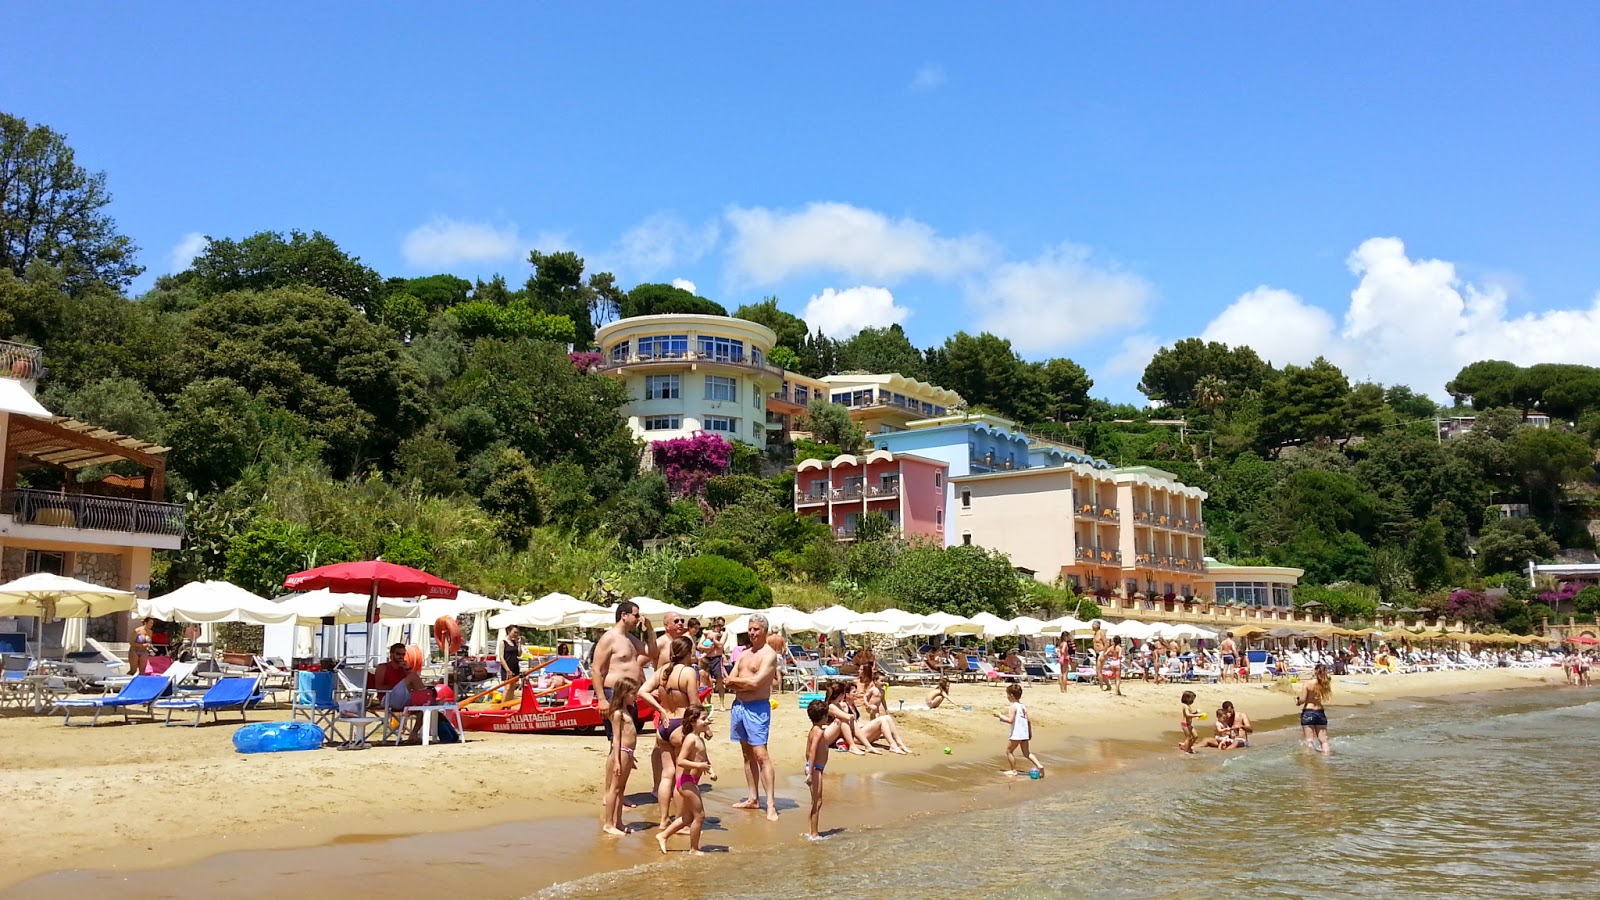 Zdjęcie Summit Hotel beach - popularne miejsce wśród znawców relaksu